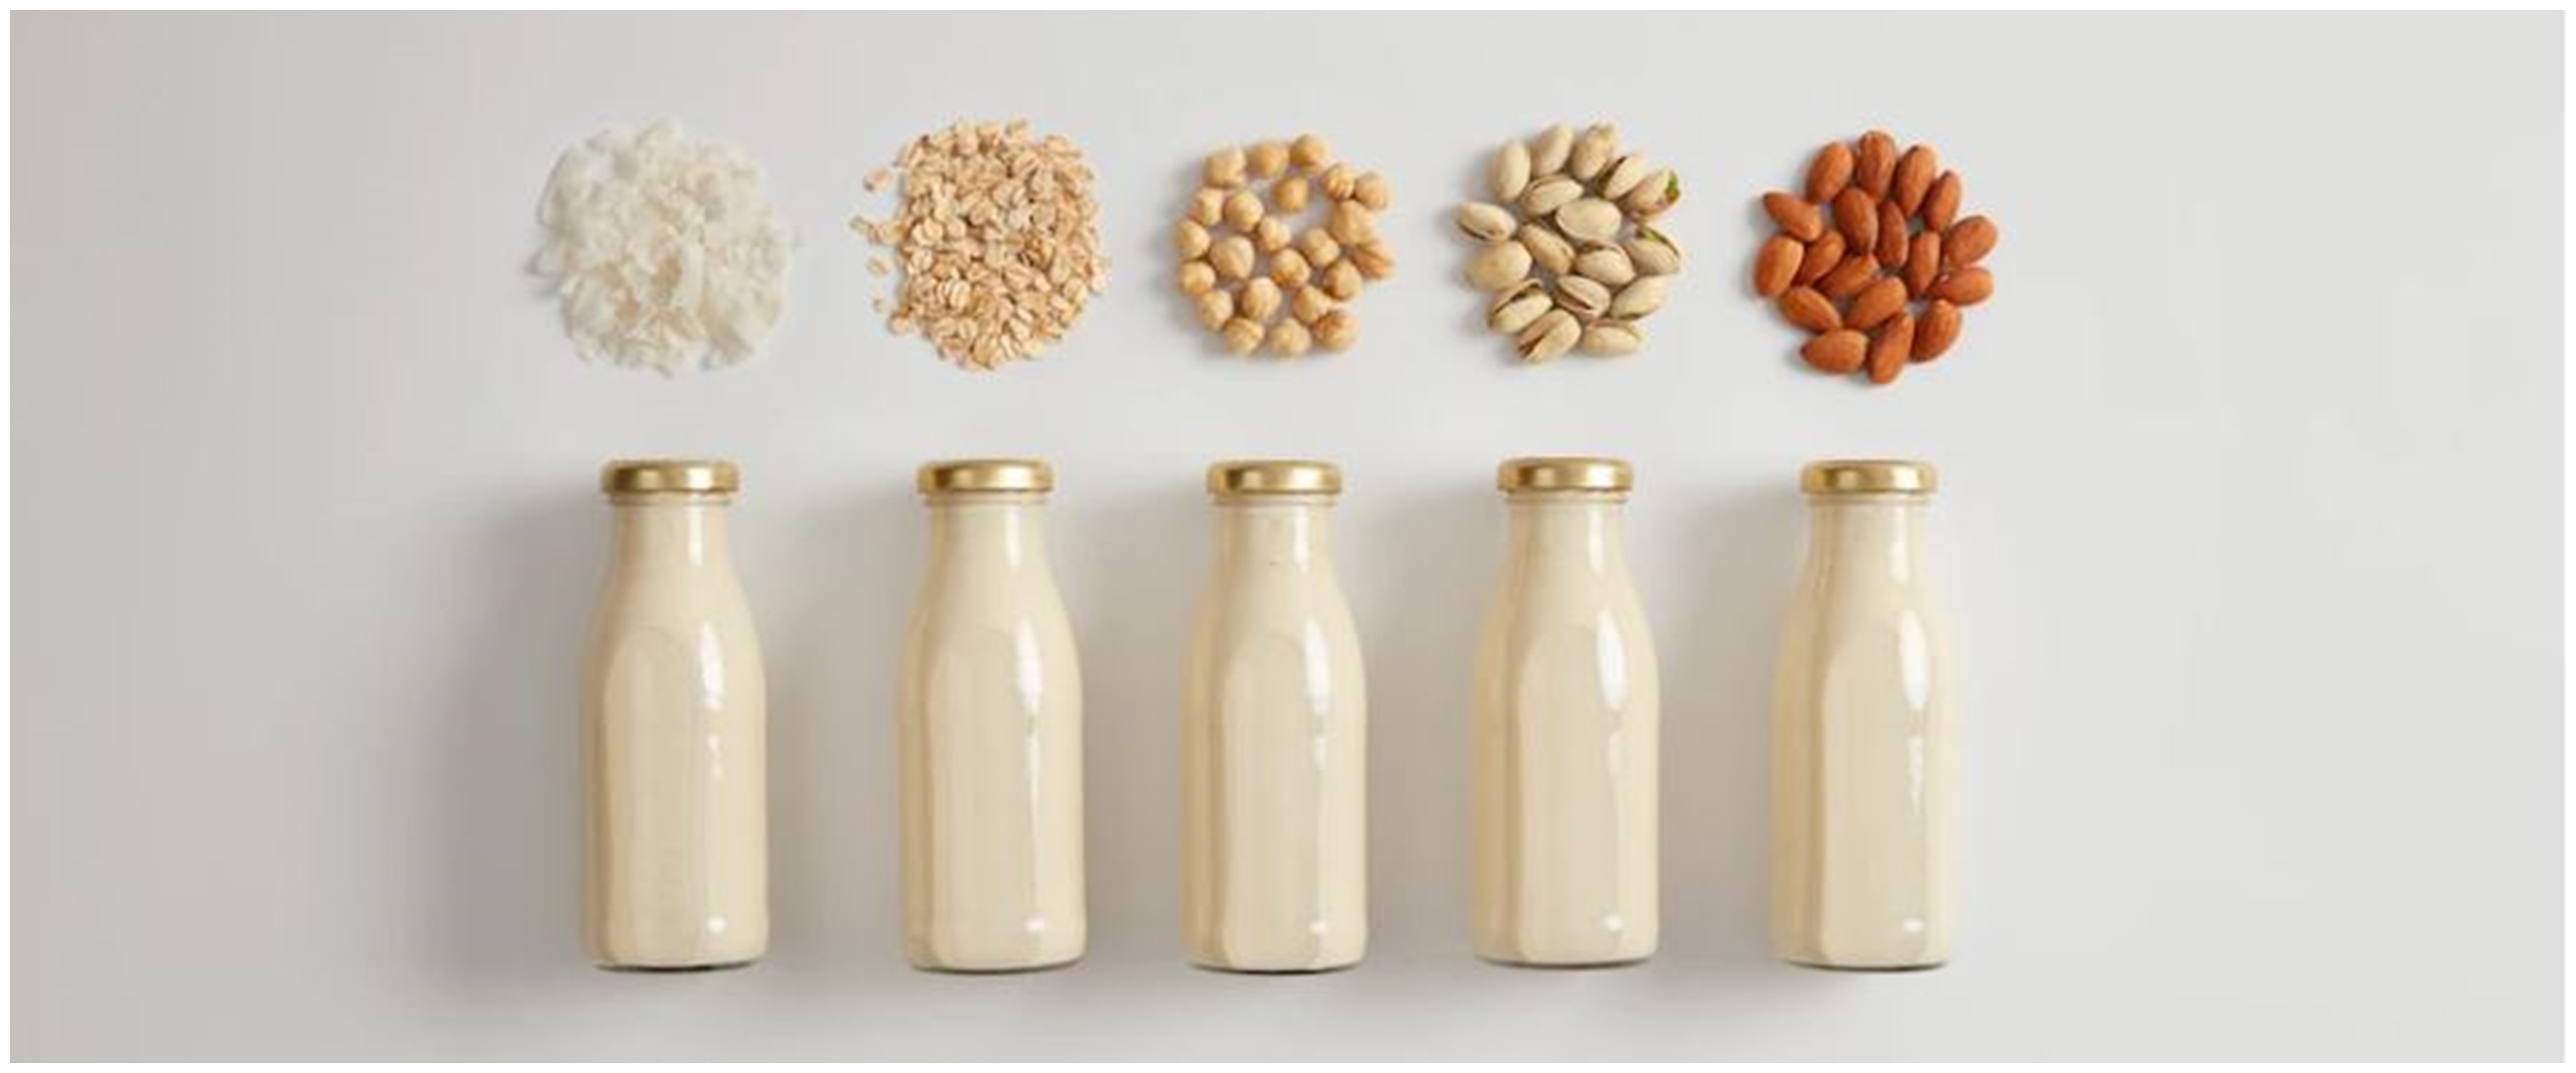 Alergi terhadap laktosa? 10 susu nabati ini bisa jadi alternatif